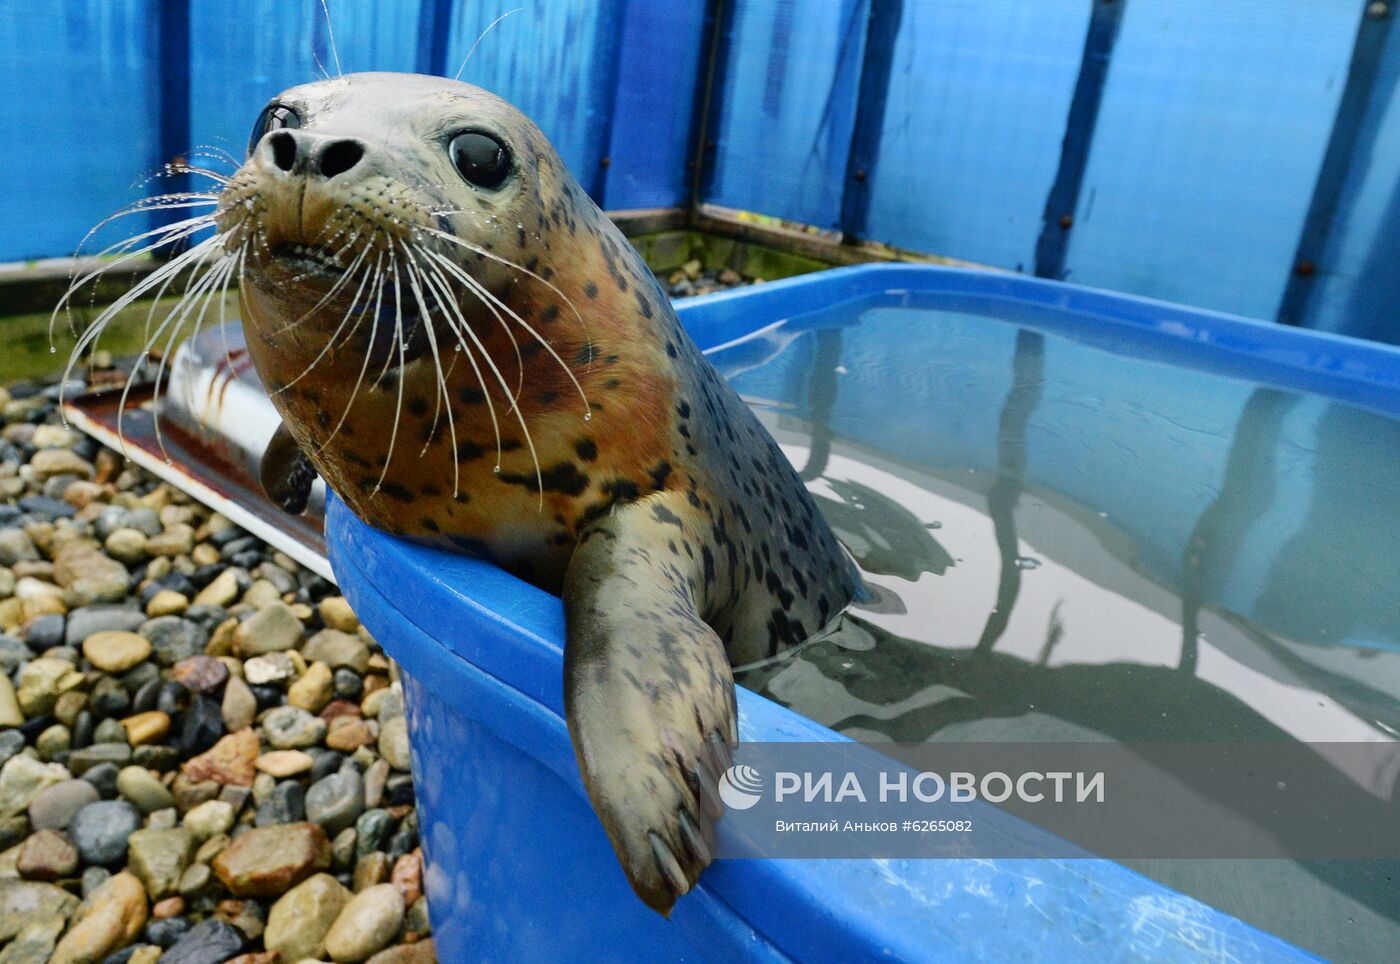 Центр реабилитации морских млекопитающих "Тюлень" в Приморском крае